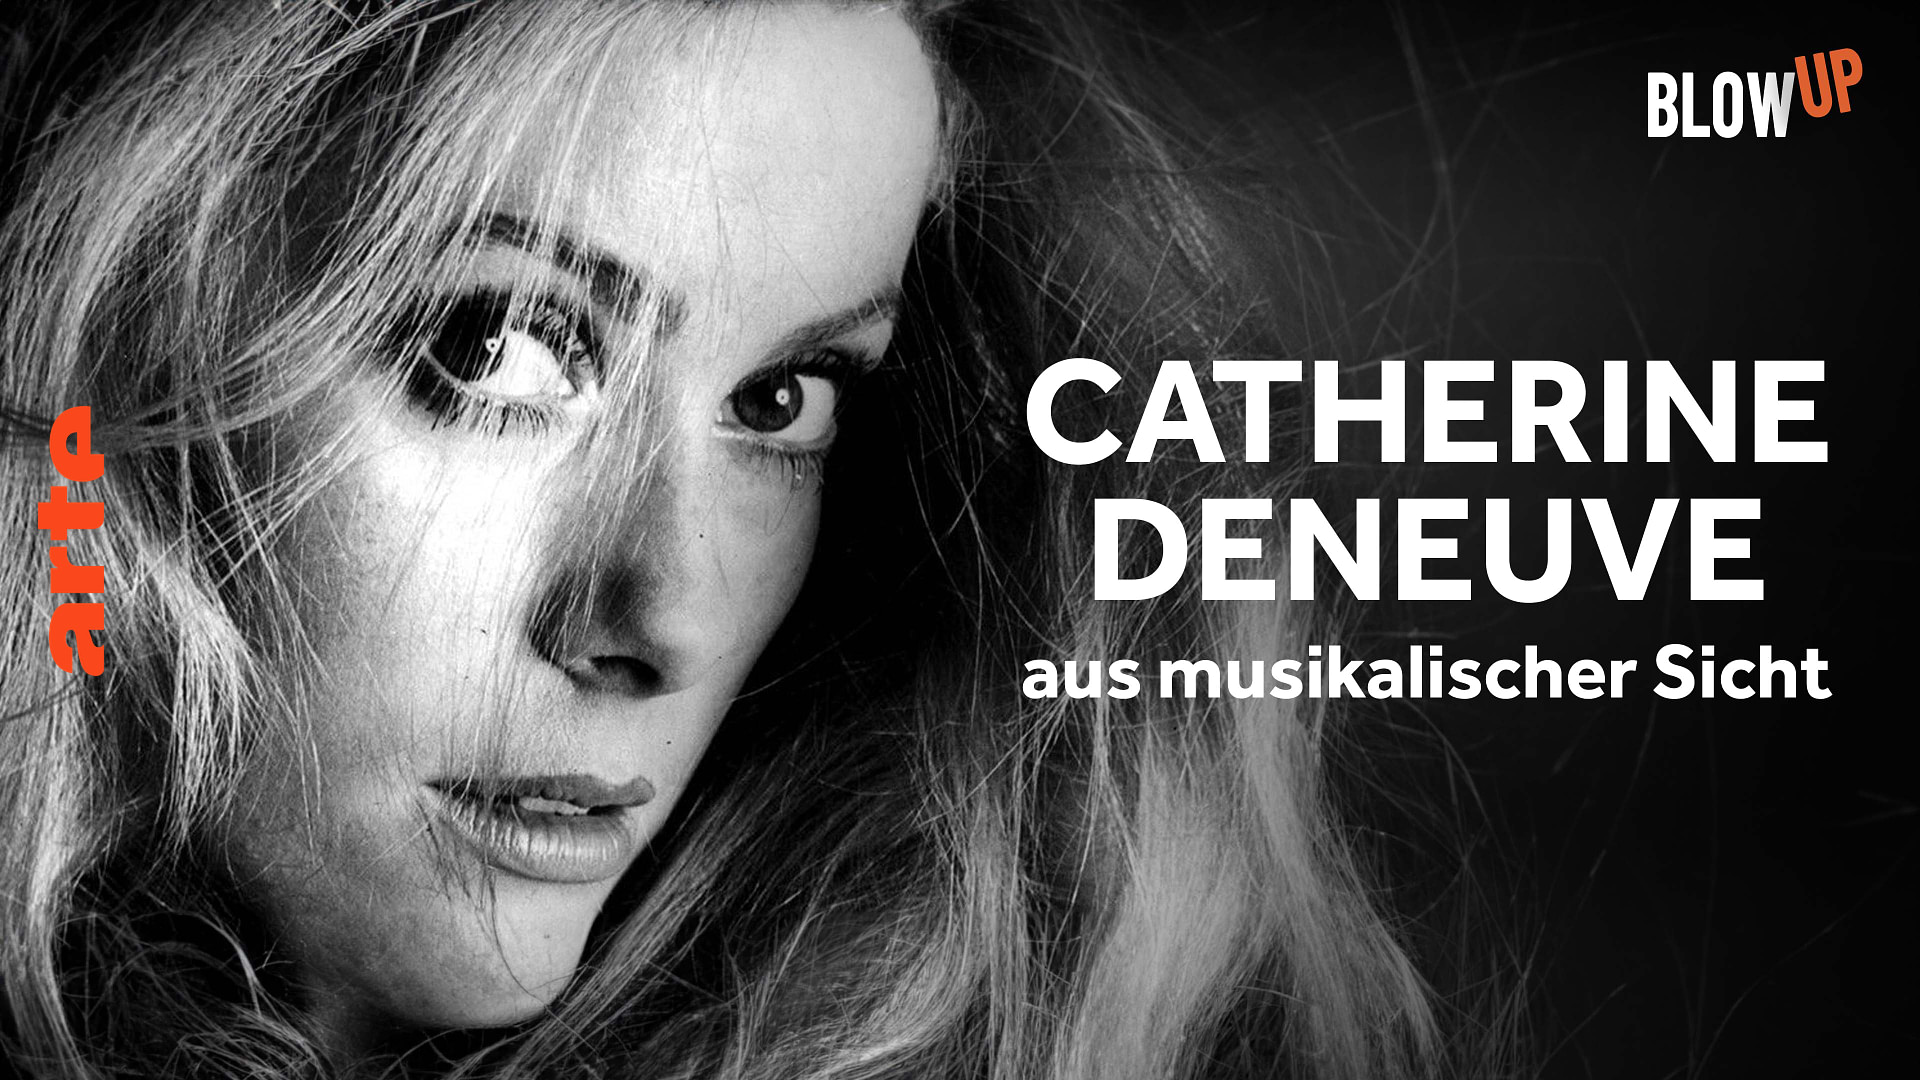 Blow up - Catherine Deneuve aus musikalischer Sicht